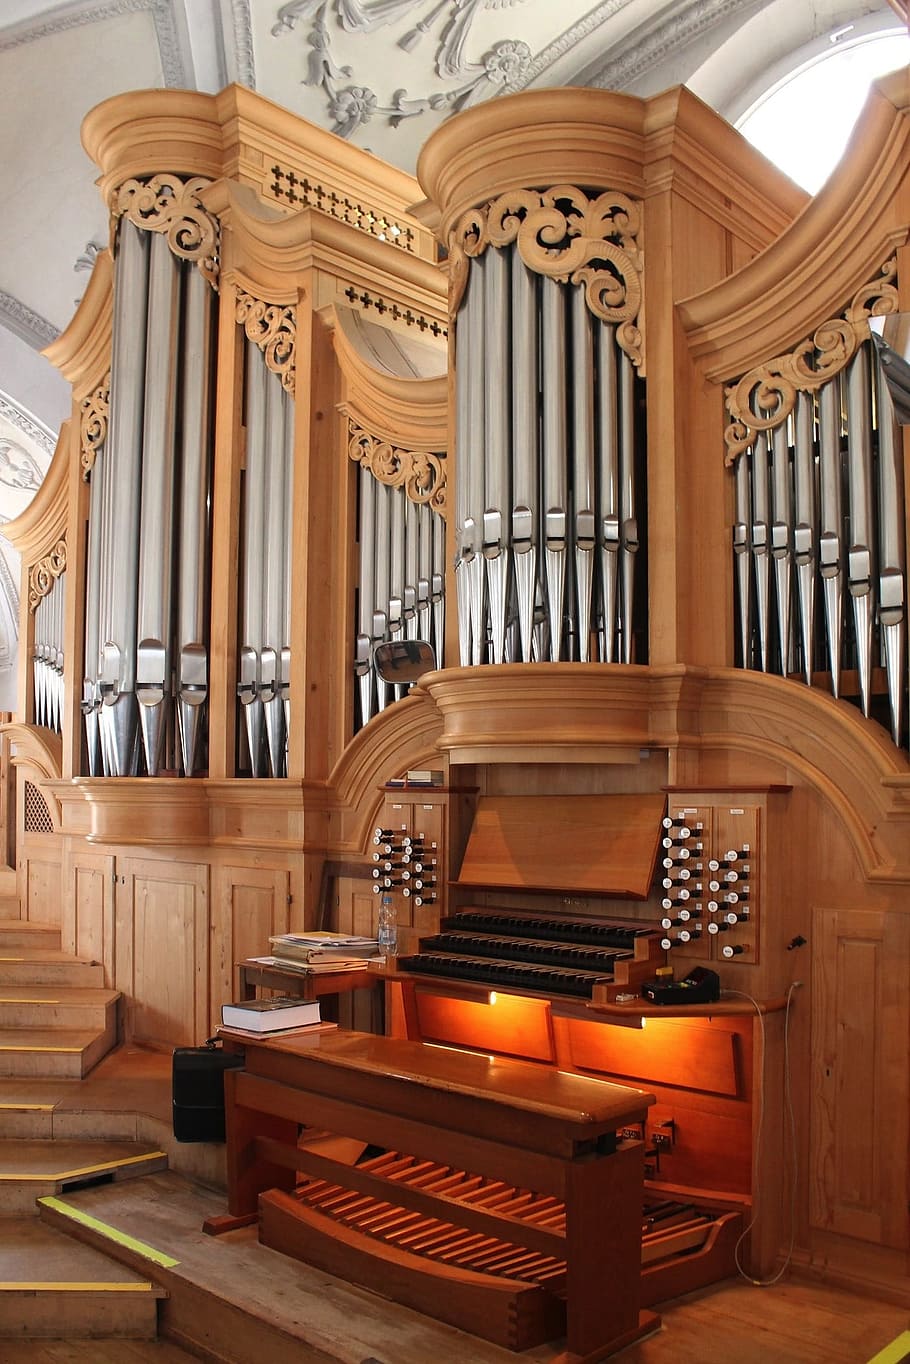 Marrón, piano de consola, Alemania, Wolfratshausen, San Andreas, iglesia, órgano, música, instrumento, ornamentado